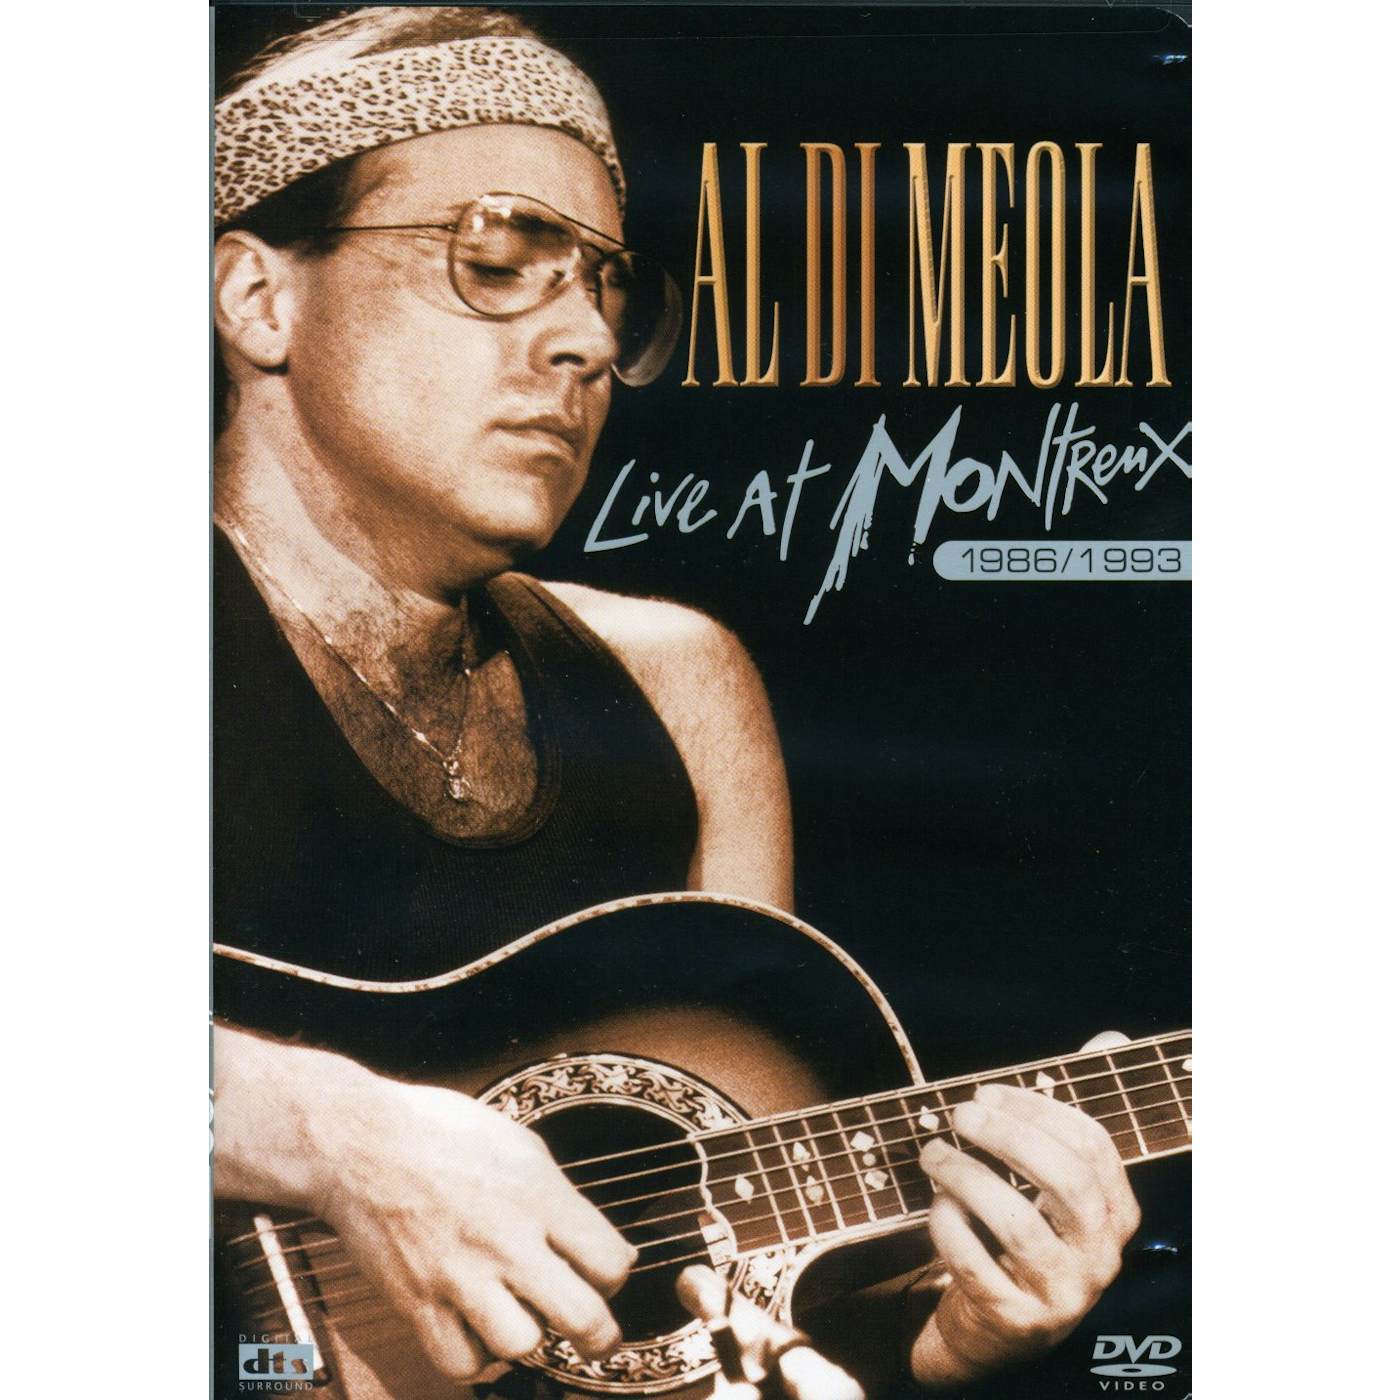 AL DI MEOLA: LIVE AT MONTREUX 1986 1993 DVD